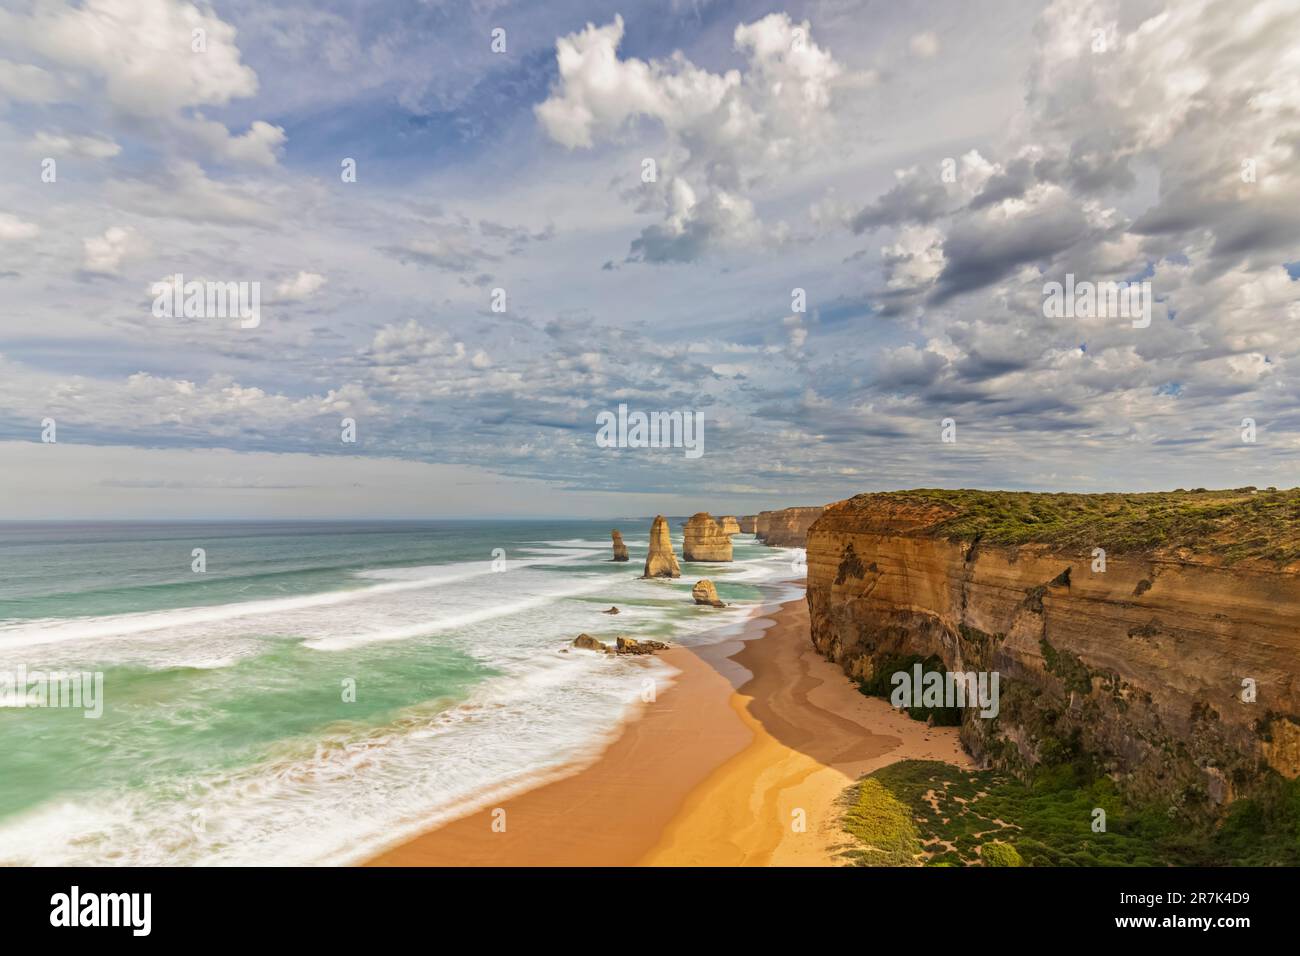 Australia, Victoria, Vista delle nuvole sulla spiaggia sabbiosa nel Parco Nazionale di Port Campbell con dodici Apostoli sullo sfondo Foto Stock